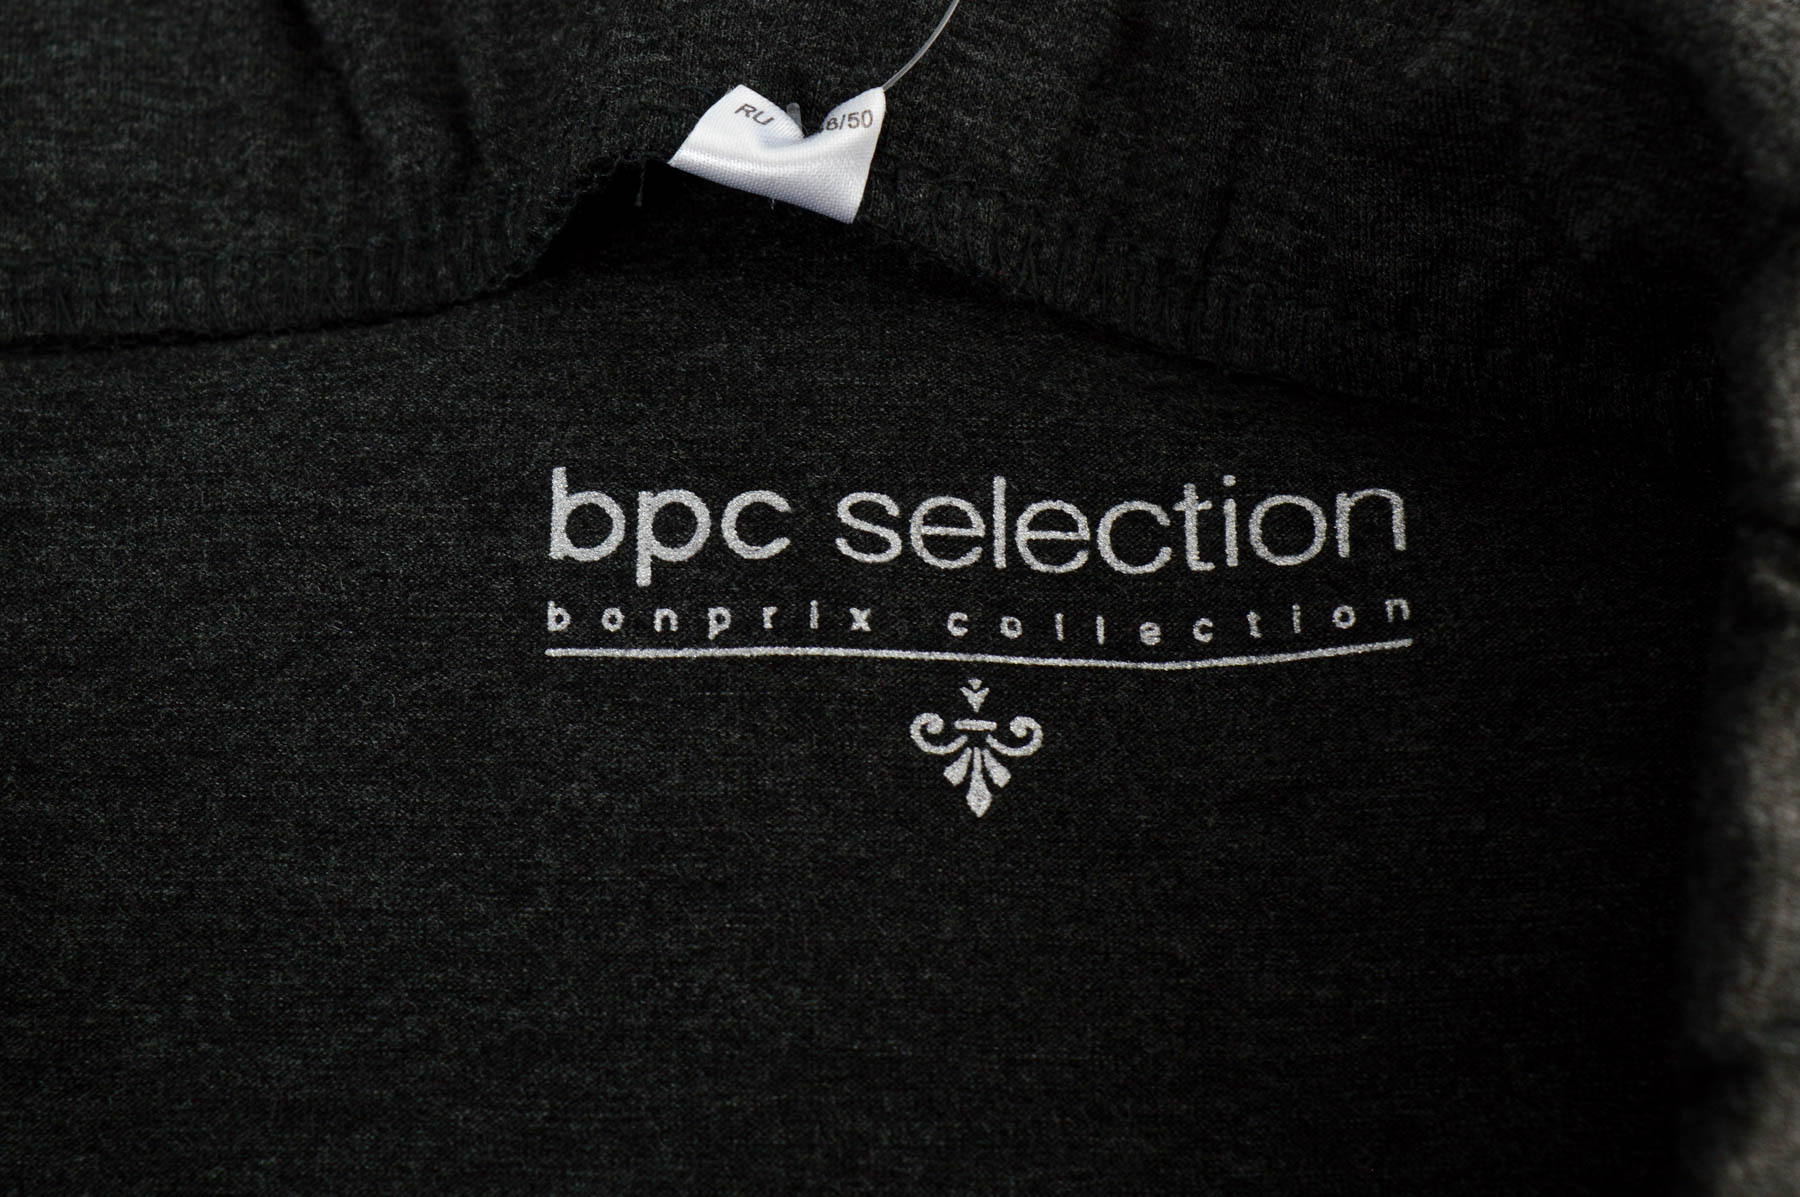 Φούστα - Bpc selection bonprix collection - 2